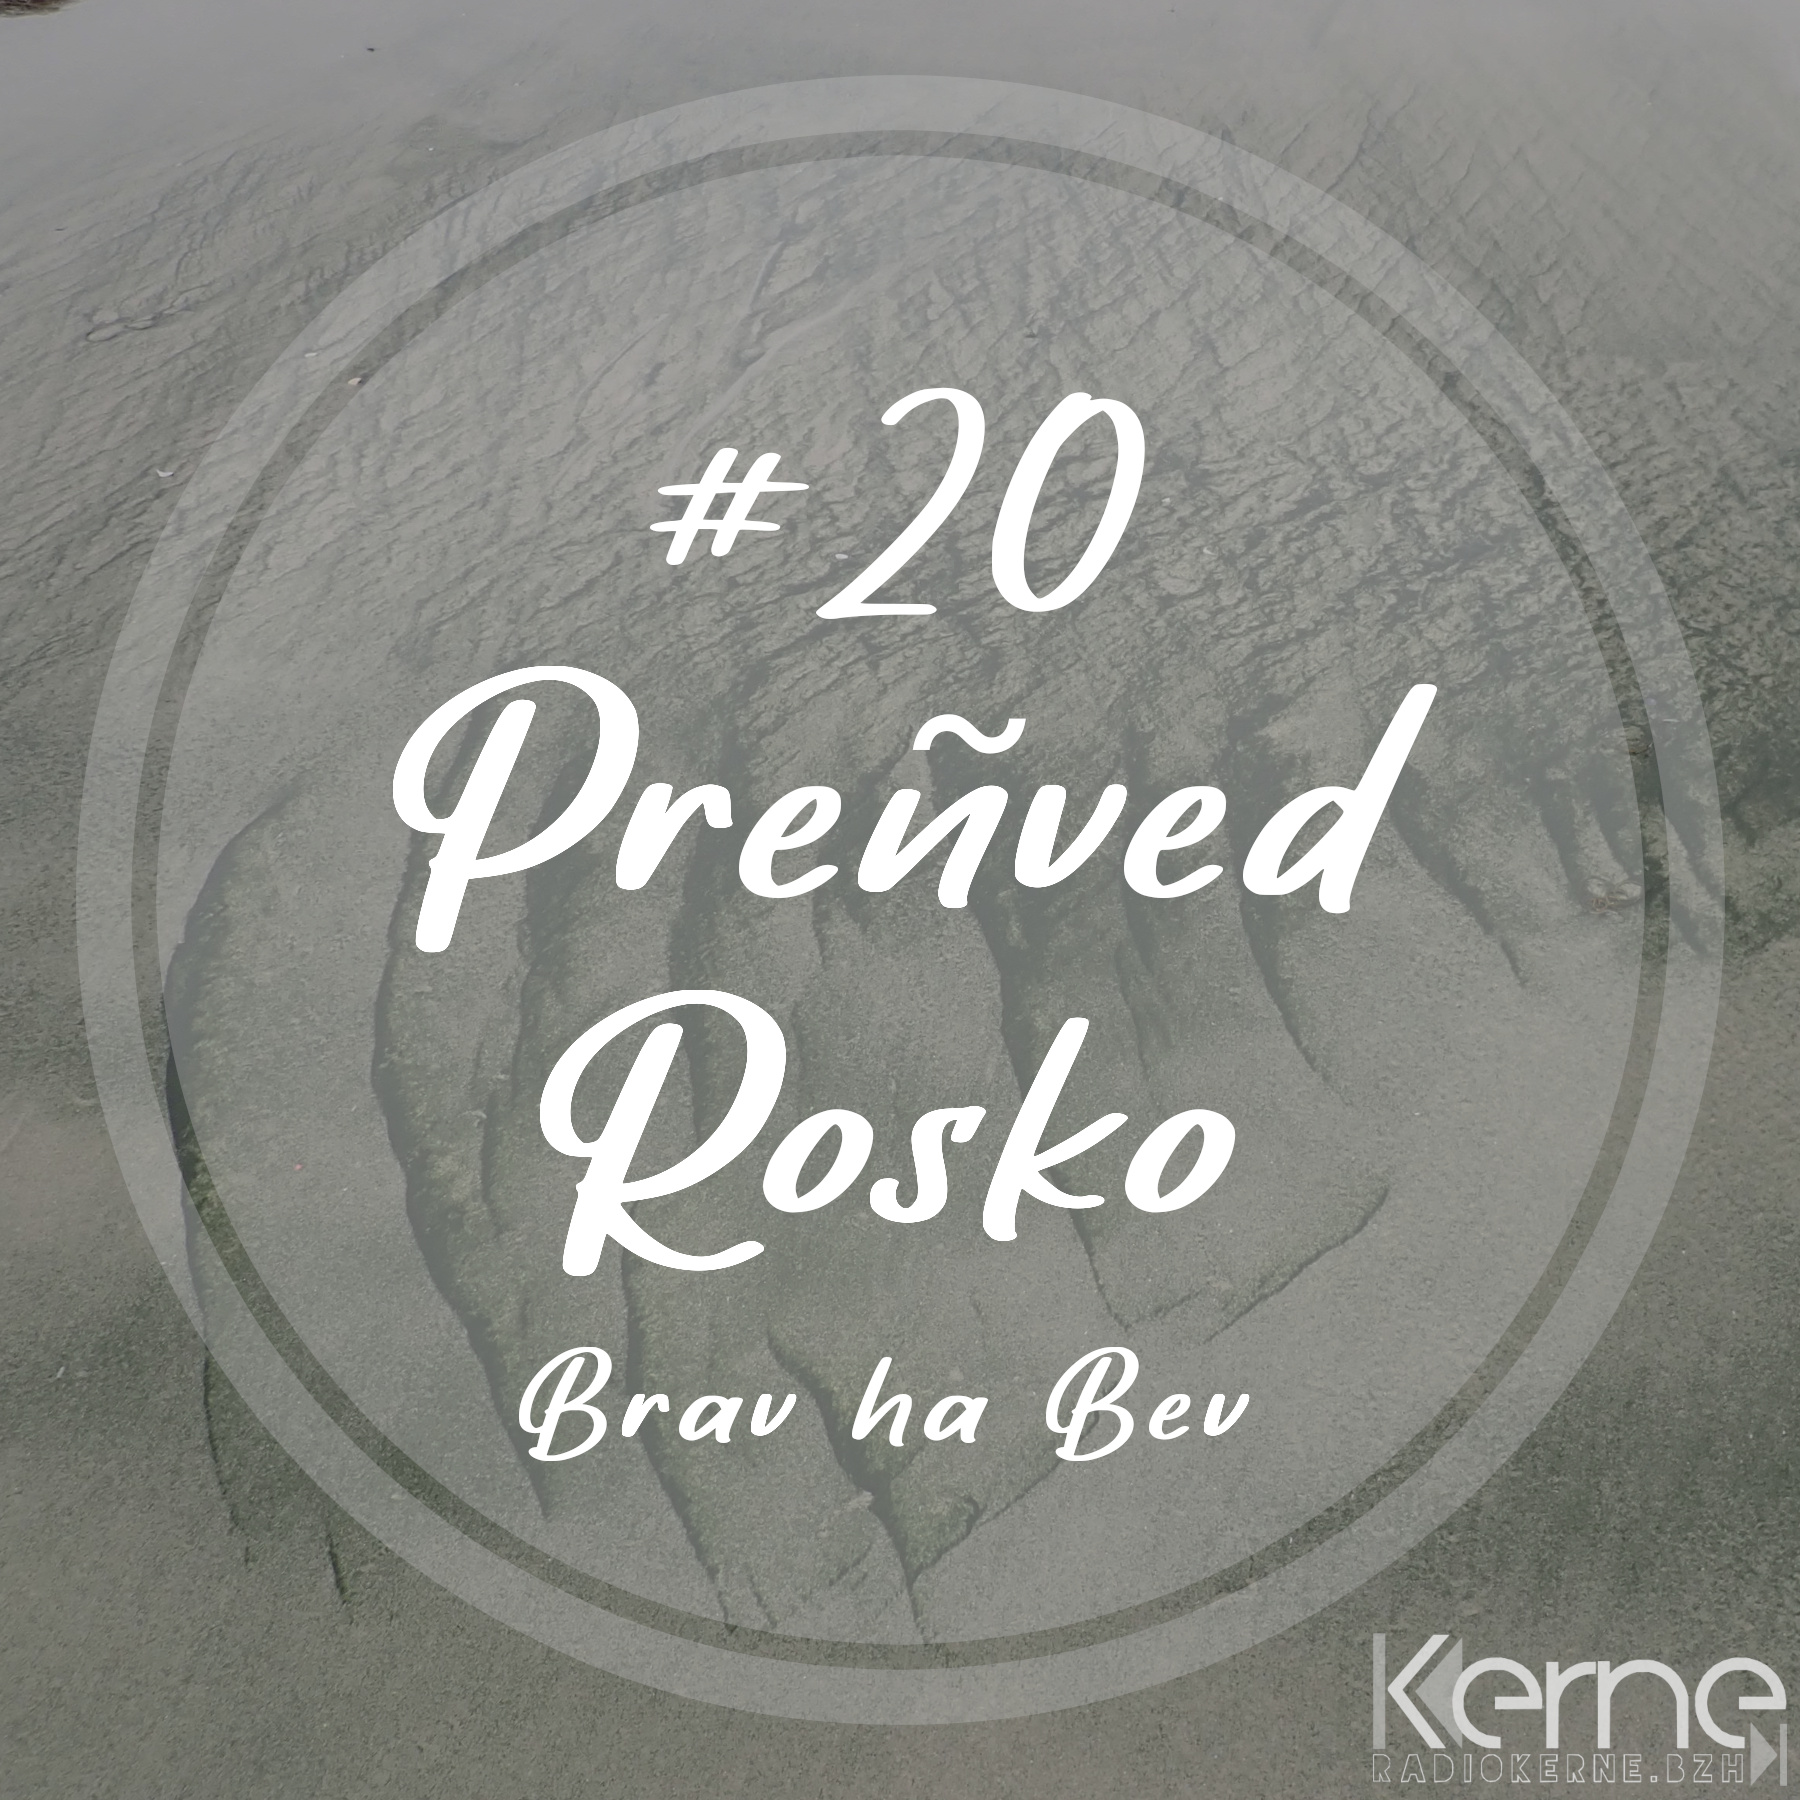 #20 Preñved Rosko